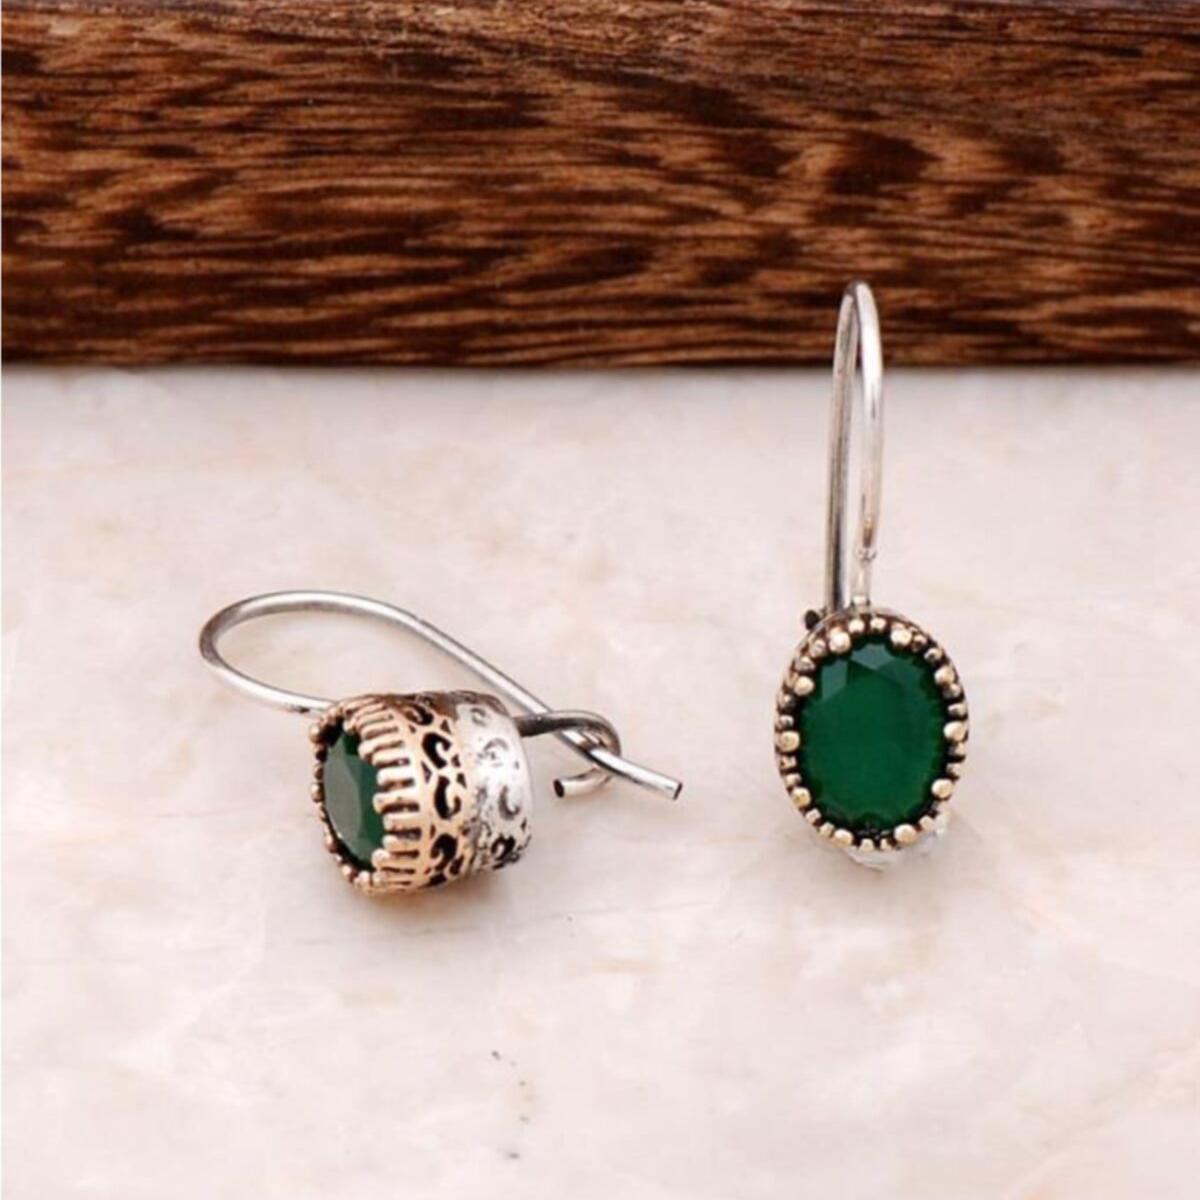 Emerald Cut Earrings • Emerald Earrings Drop, Vintage Emerald Earrings - Trending Silver Gifts